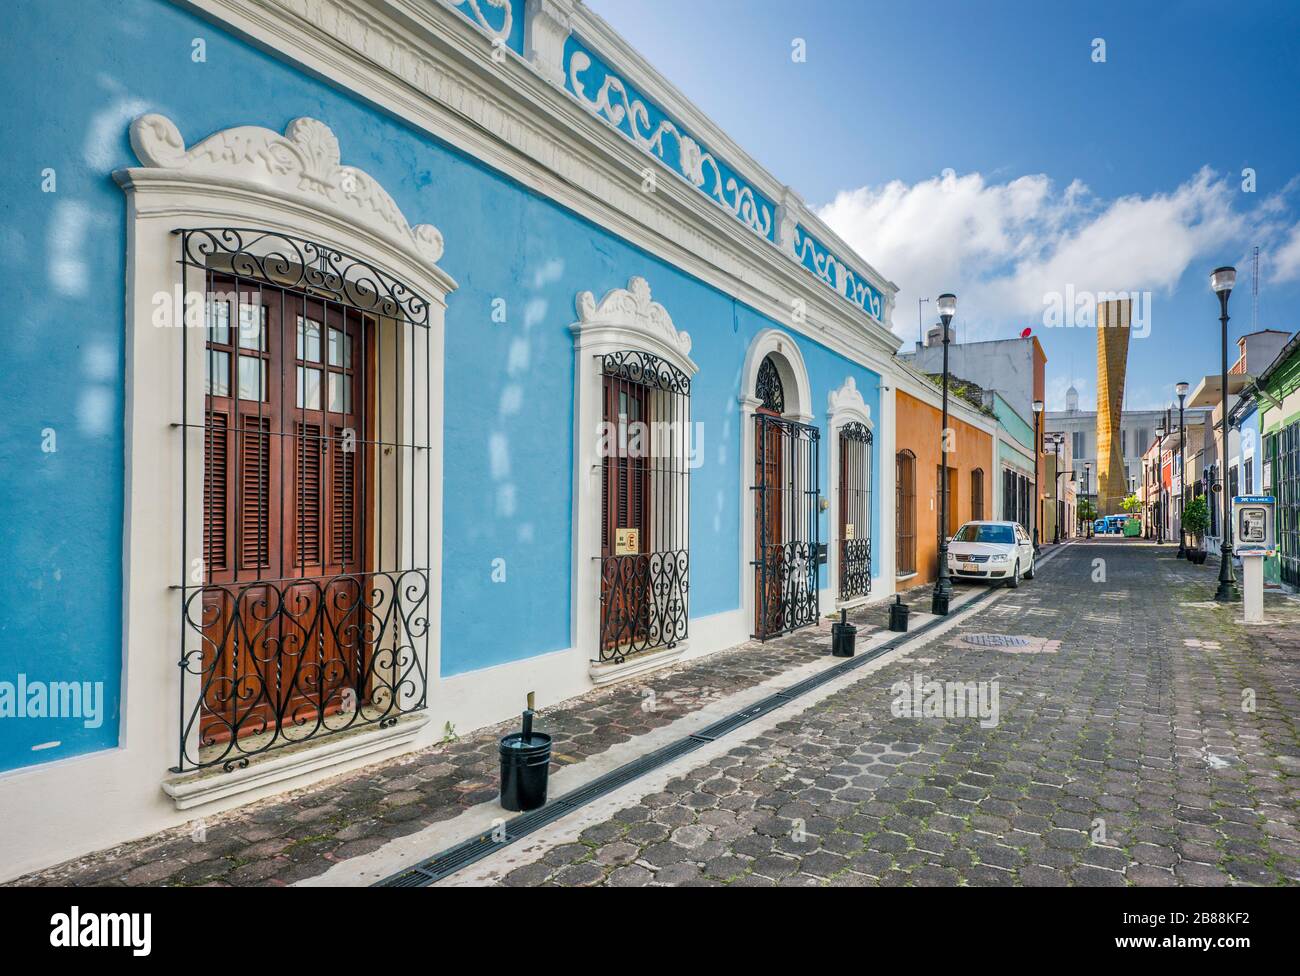 Maisons de style colonial espagnol, Calle Narciso Saenz, rue dans la zone piétonne de Zona Luz, partie la plus ancienne de Villahermosa, état de Tabasco, Mexique Banque D'Images